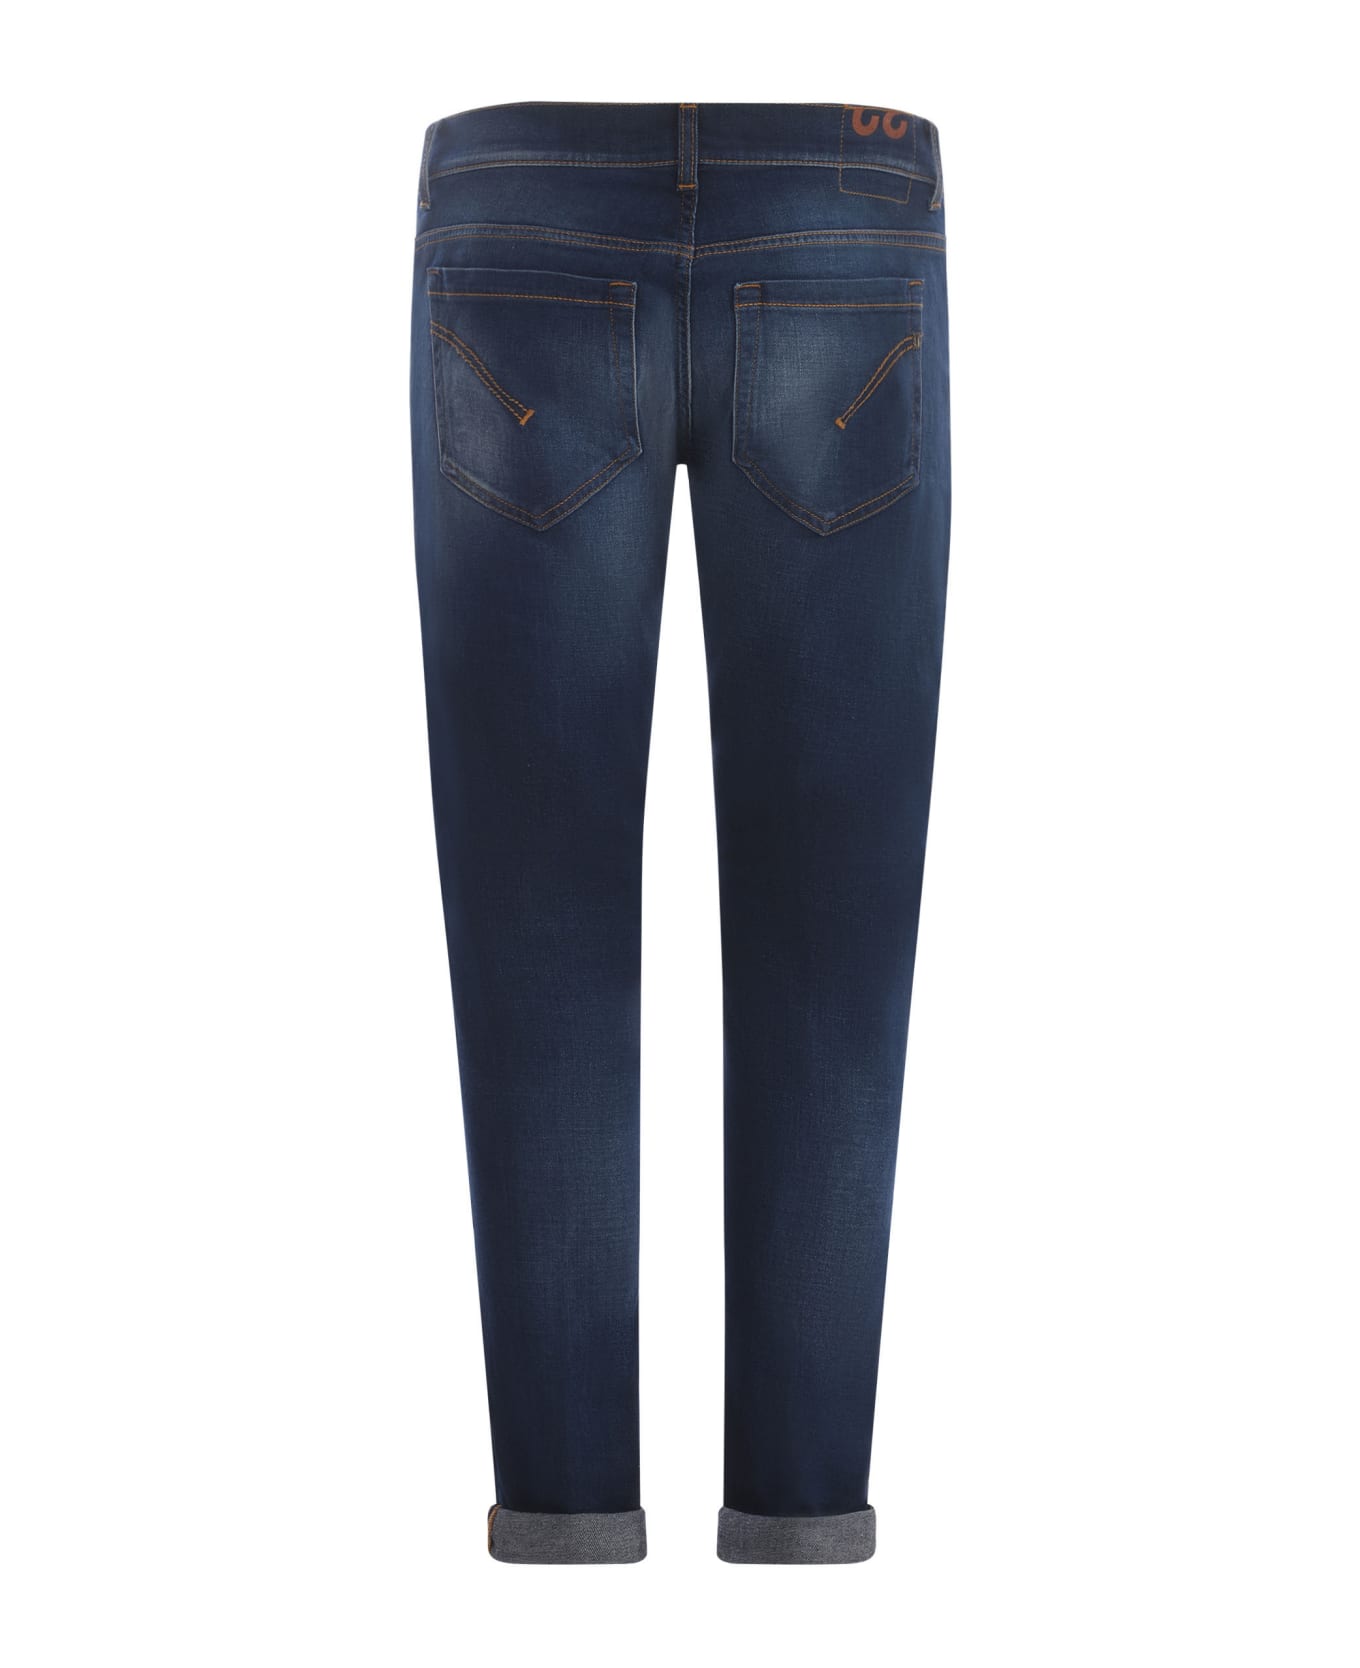 Dondup George Skinny Jeans In Dark Blue Stretch Denim - Blu